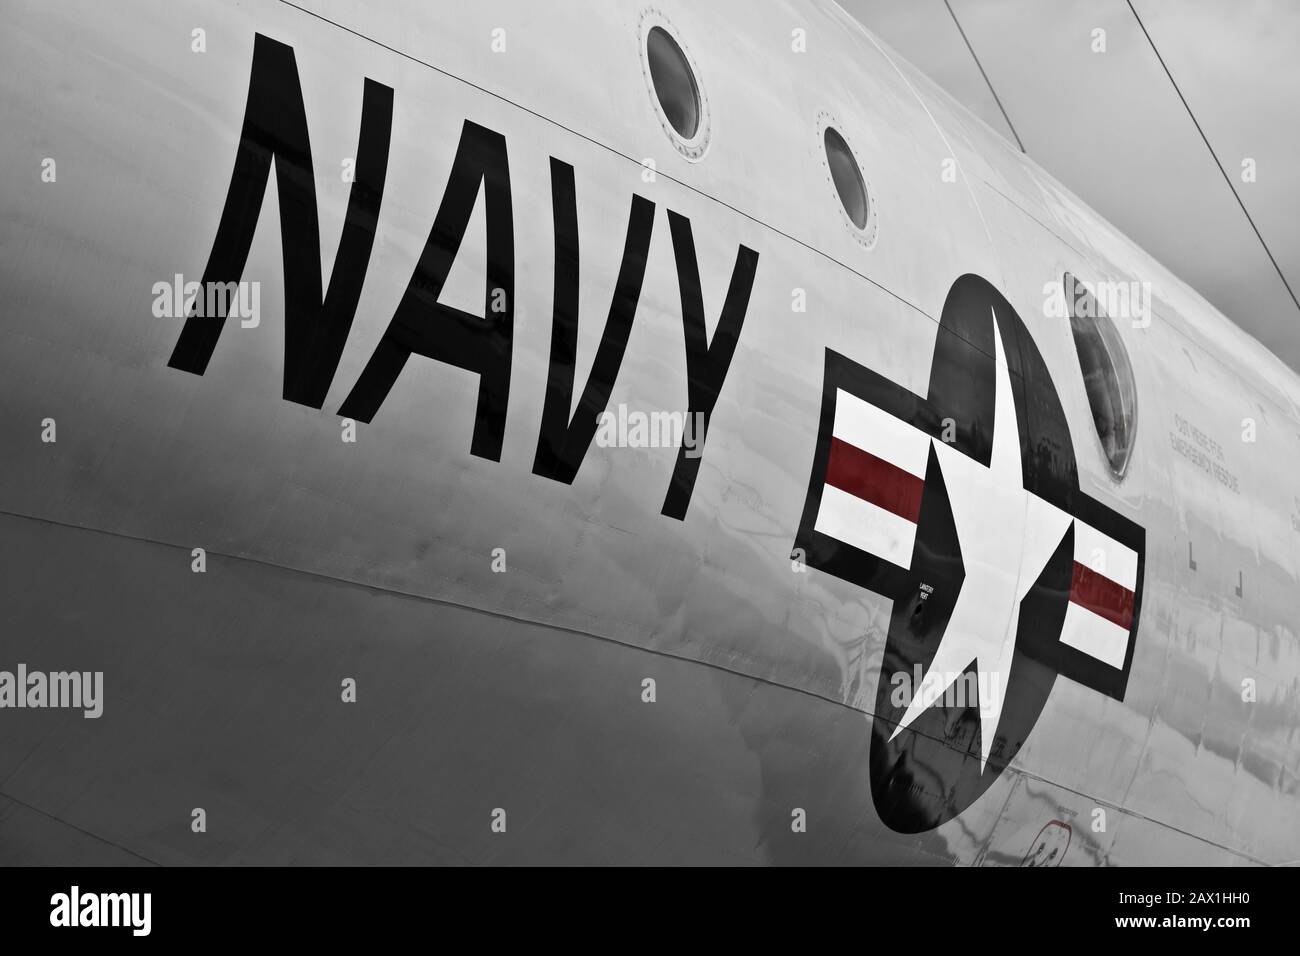 Luqa, MALTA - 25 SEP - USAF Navy Schriftzug auf Rumpf von Militärflugzeugen Stockfoto